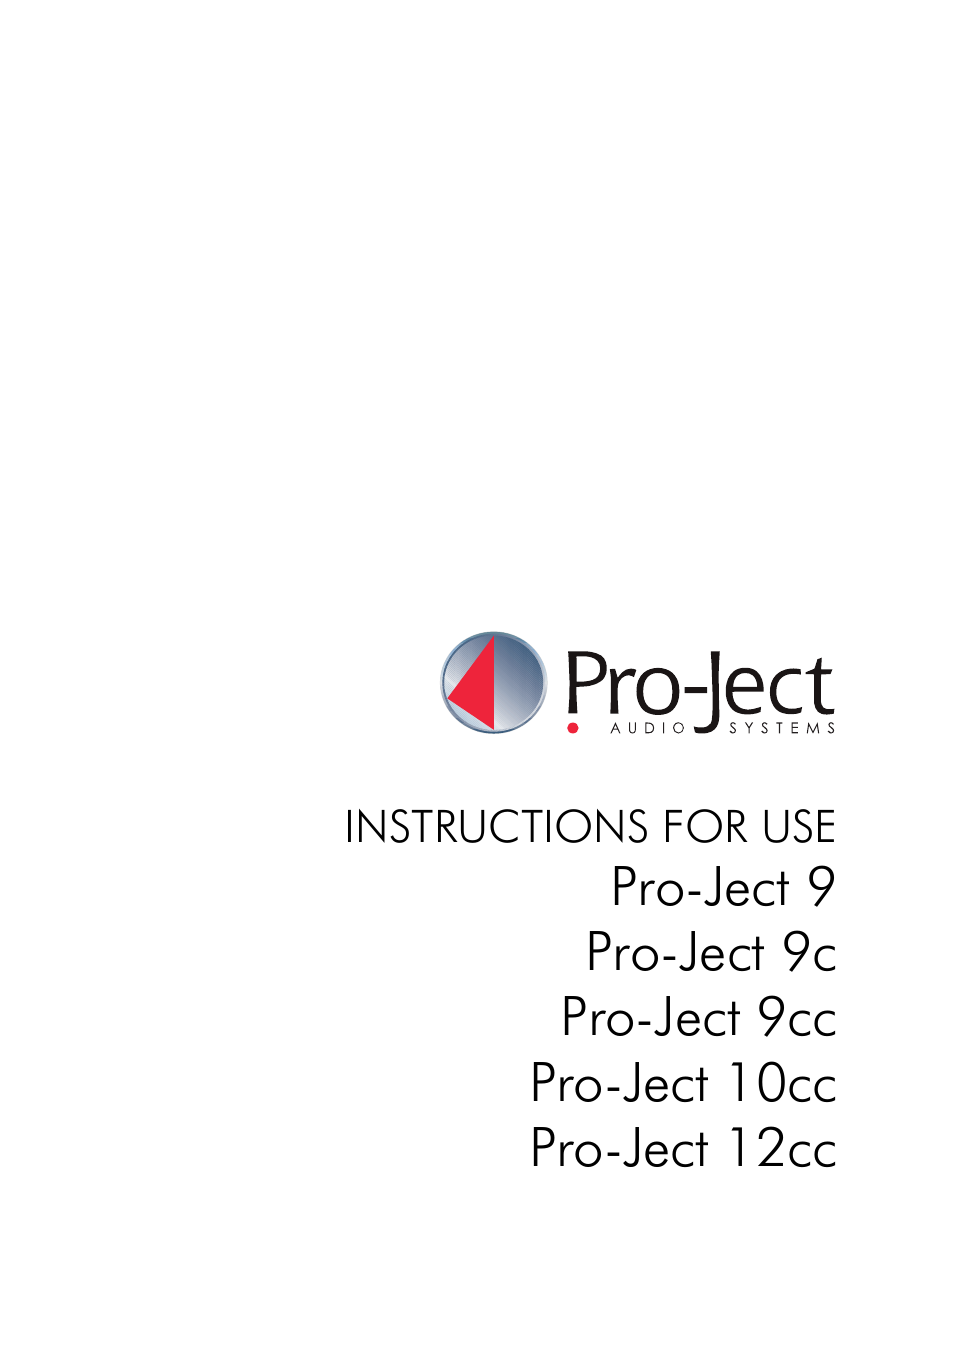 Pro-Ject 12cc